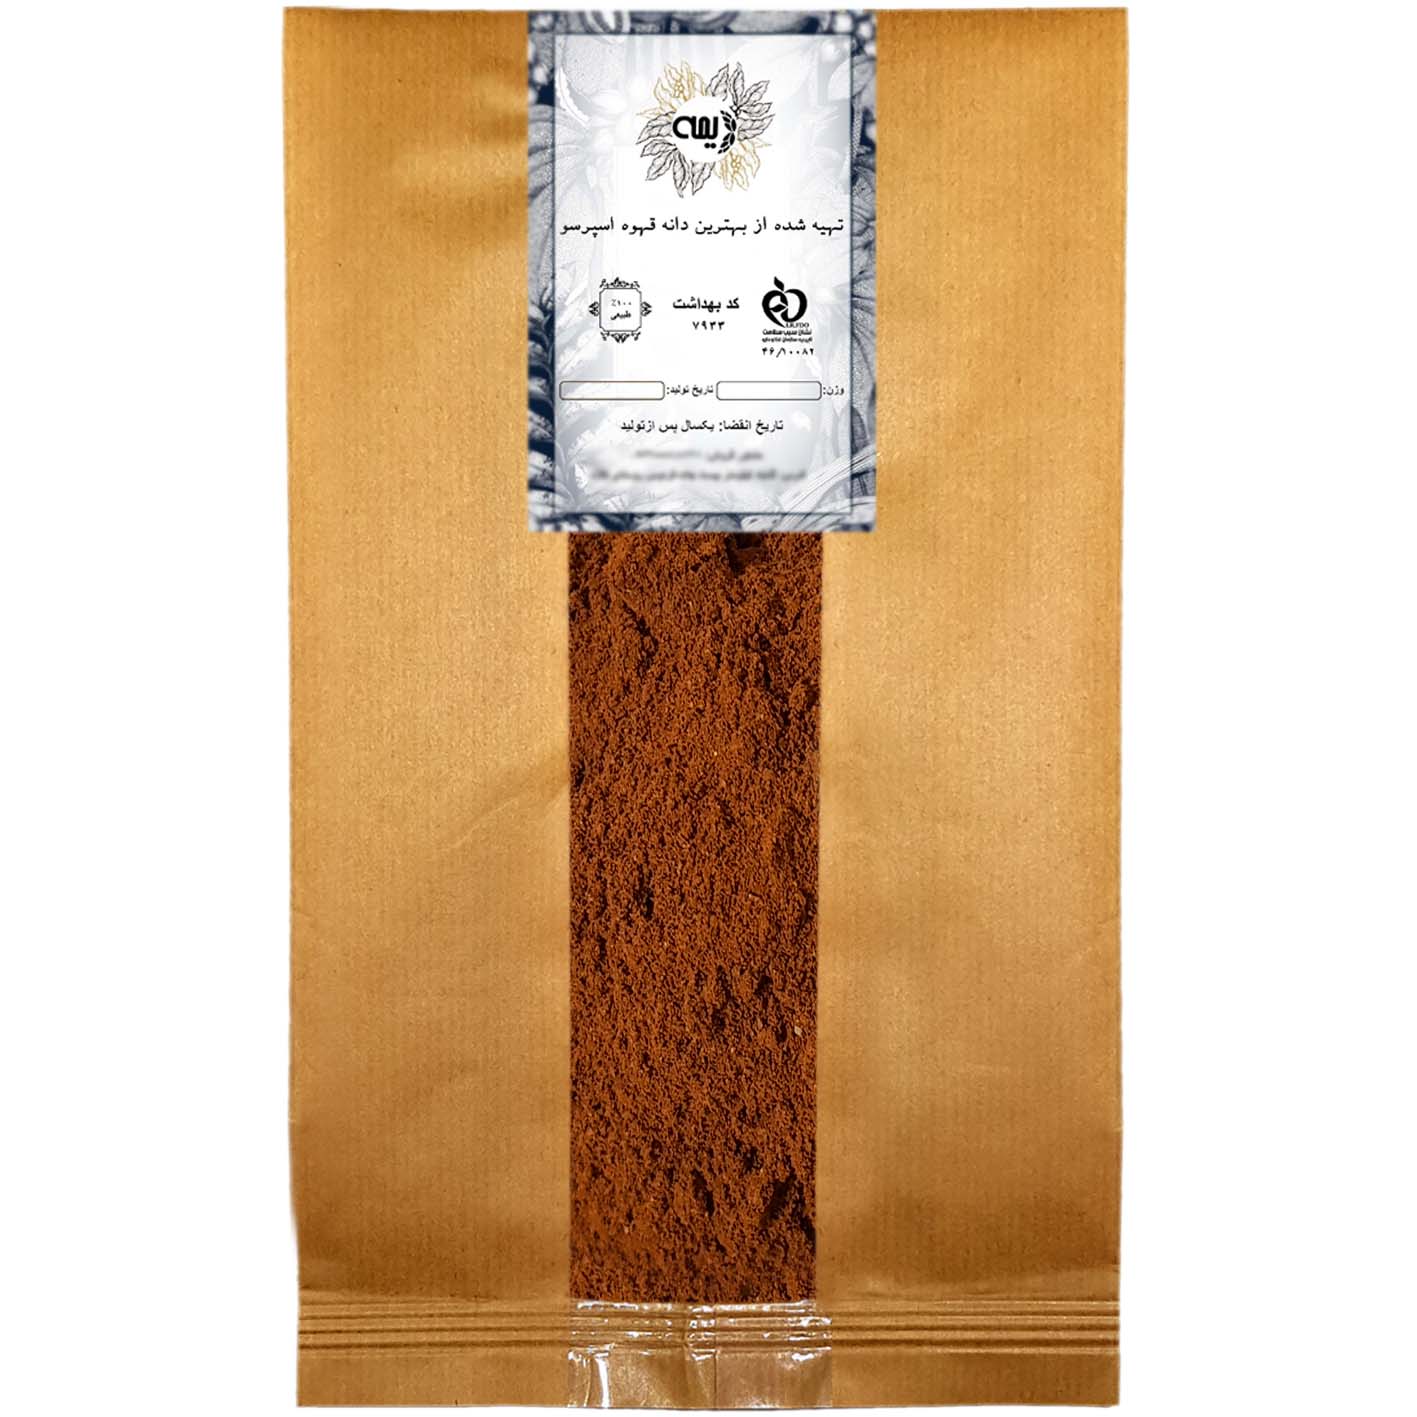 پودر قهوه میکس مدیوم دارک 80%روبوستا 20%عربیکا دیمه - 250 گرم